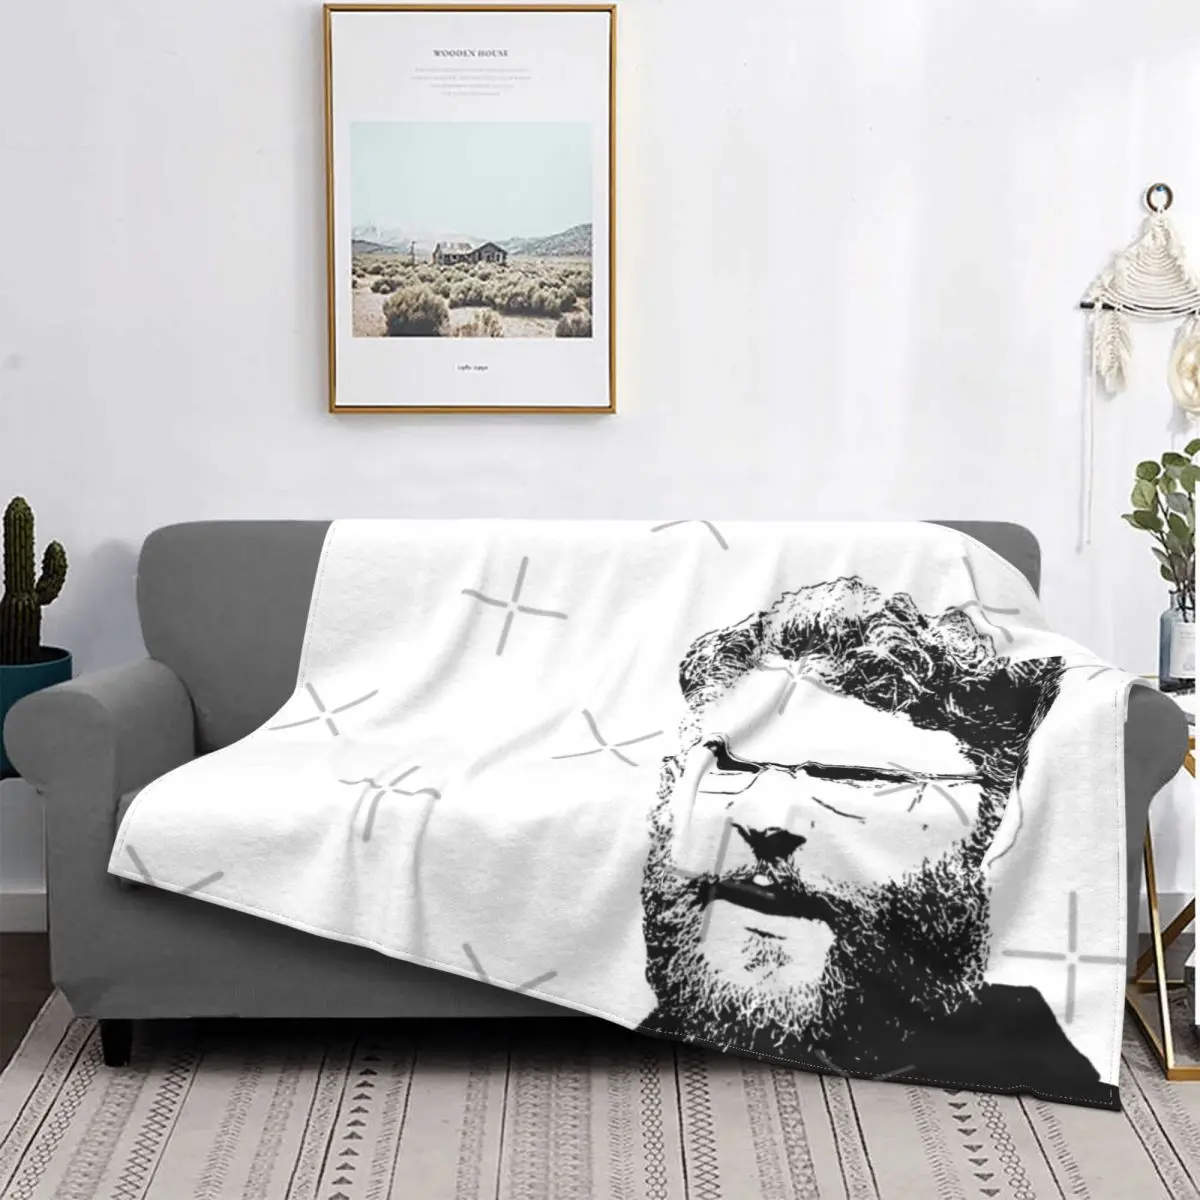 

Одеяло Seth Rogen, покрывало для кровати, плед, покрывало, пляжное полотенце, покрывало, роскошное пляжное полотенце